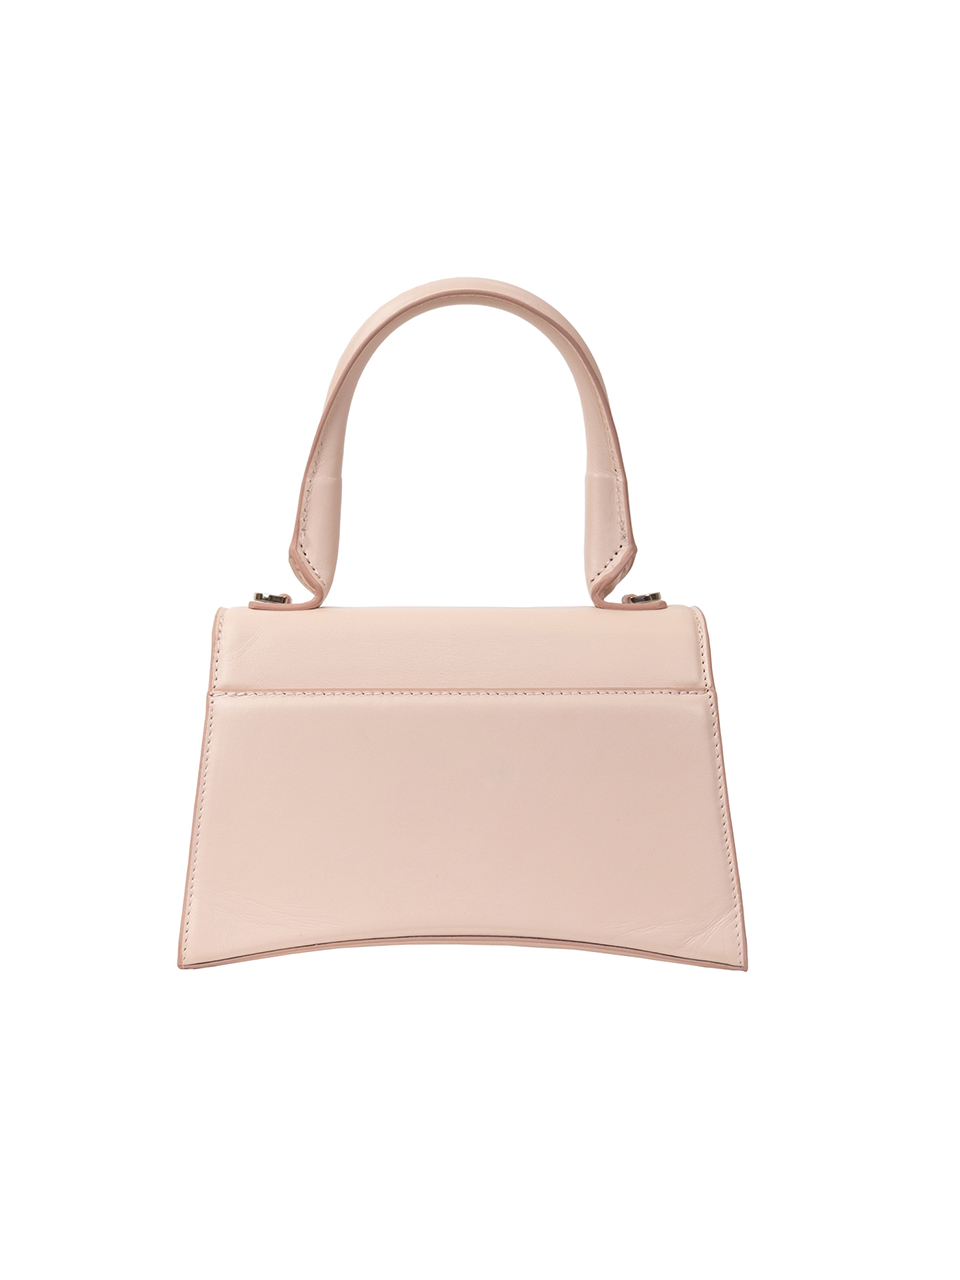 Классическая сумка Barcelona из натуральной гладкой кожи бледно-розового цвета